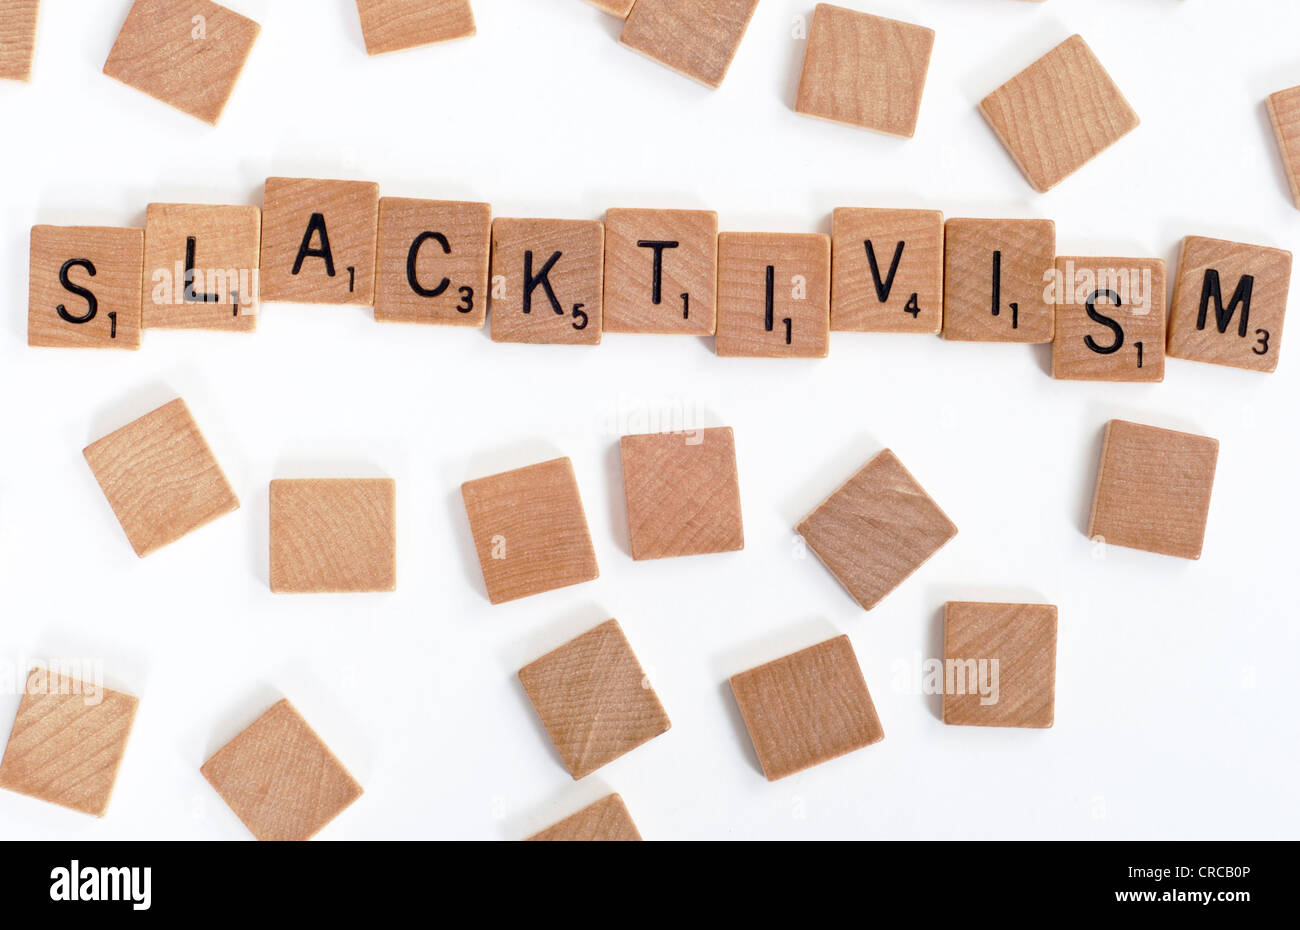 Holz-Scrabble Fliesen buchstabieren der Wörter "Slacktivism". Auf weiß Stockfoto